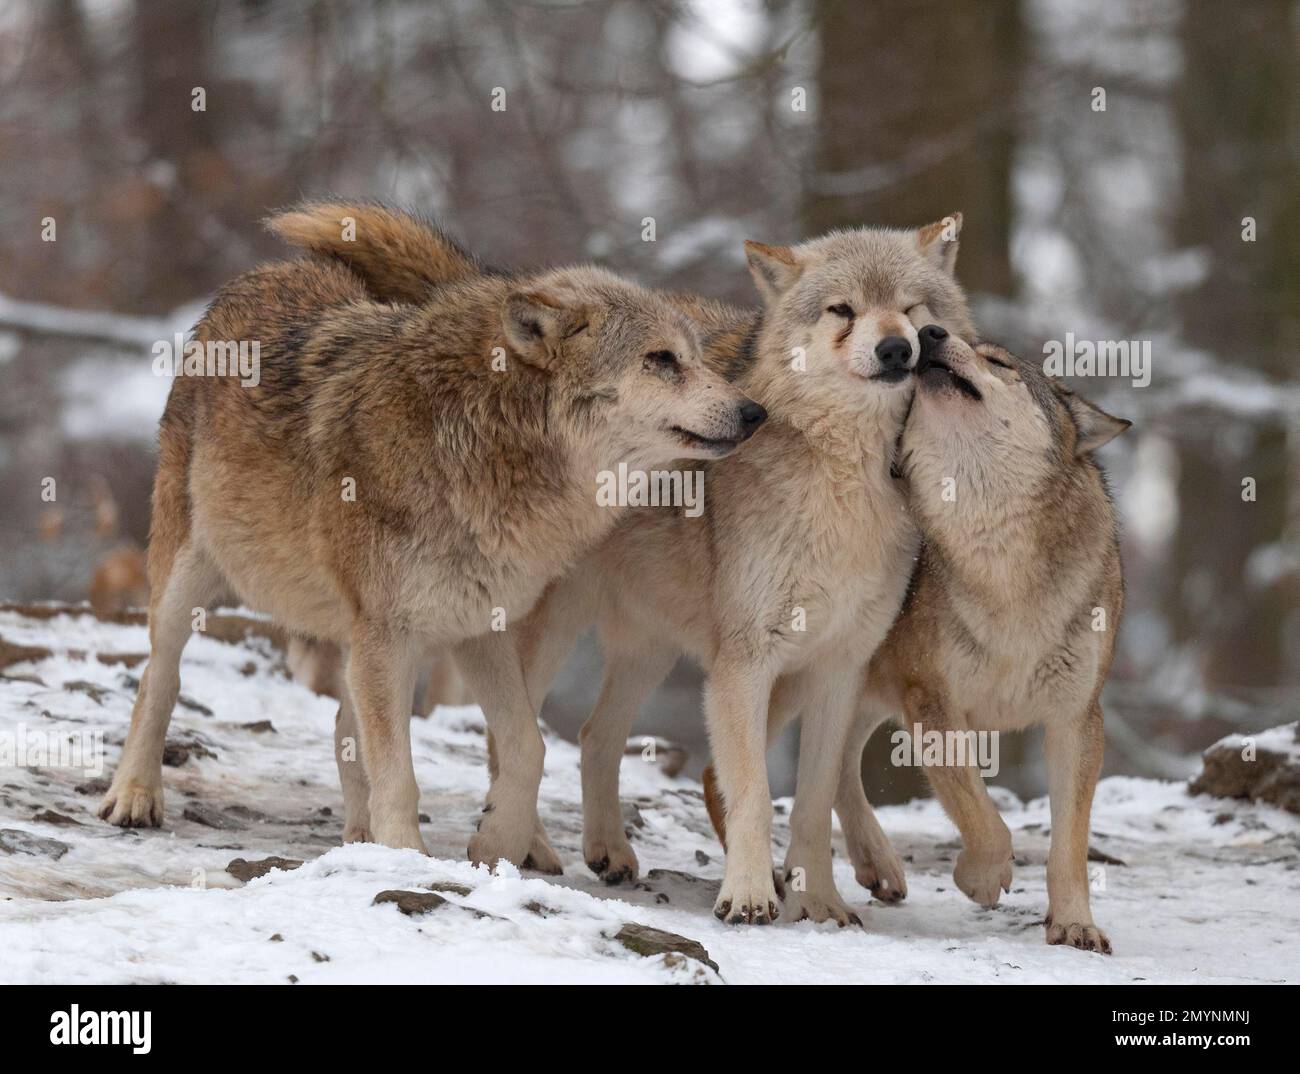 Wolf Pack, loups algongonquides (Canis lupus lycaon) comportement social, dans la neige, captive, Allemagne, Europe Banque D'Images